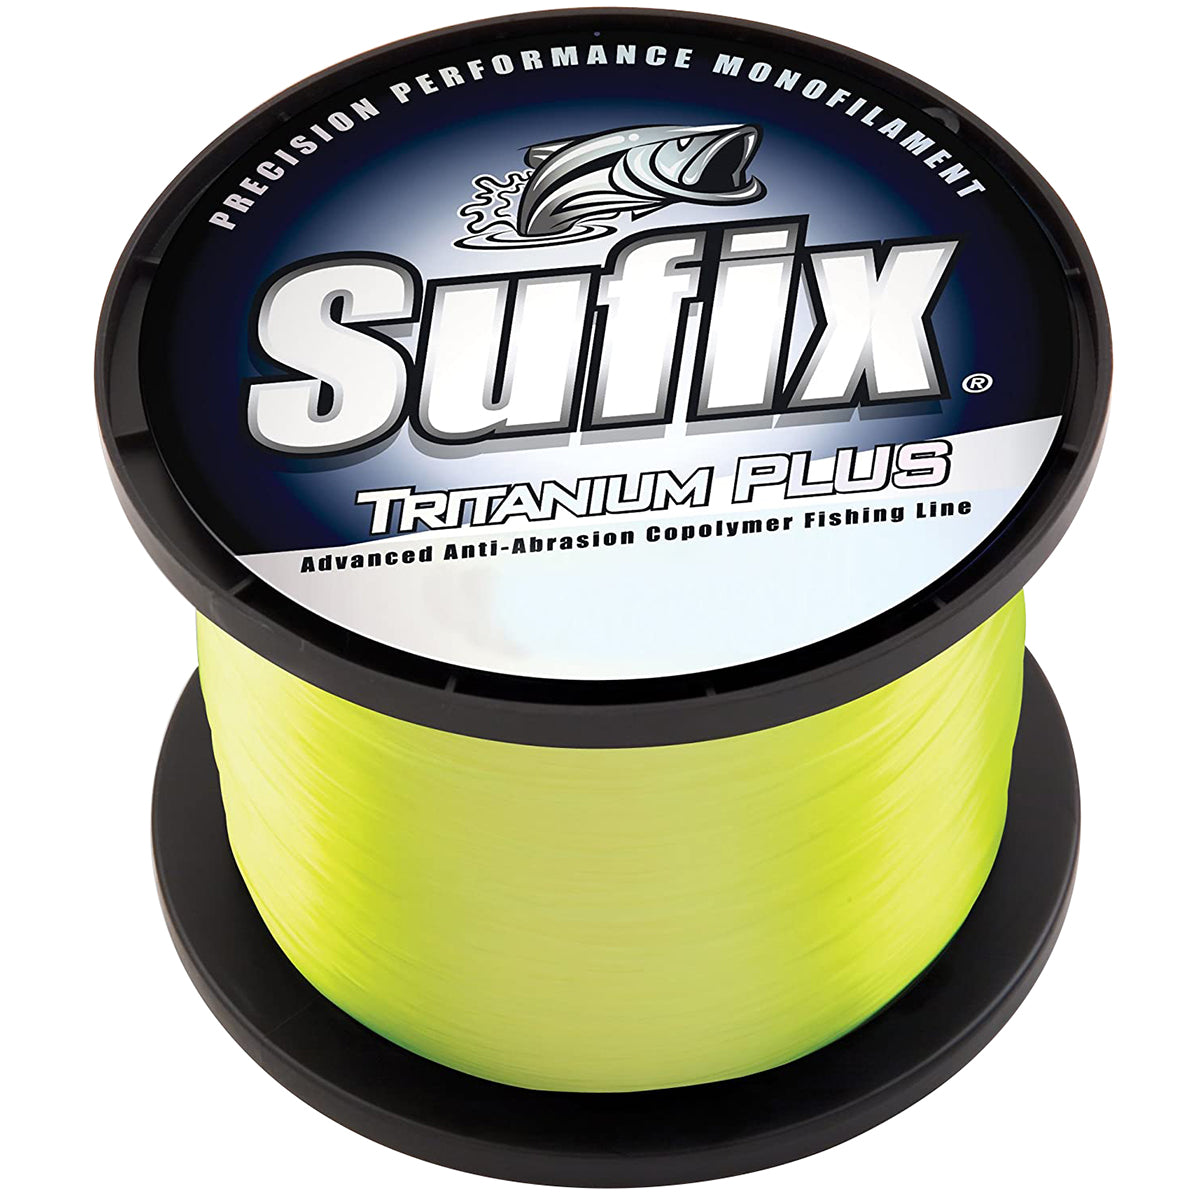 Sufix Tritanium Plus Chartreuse Fishing Line (2670 yds) - 20 lb Test Sufix